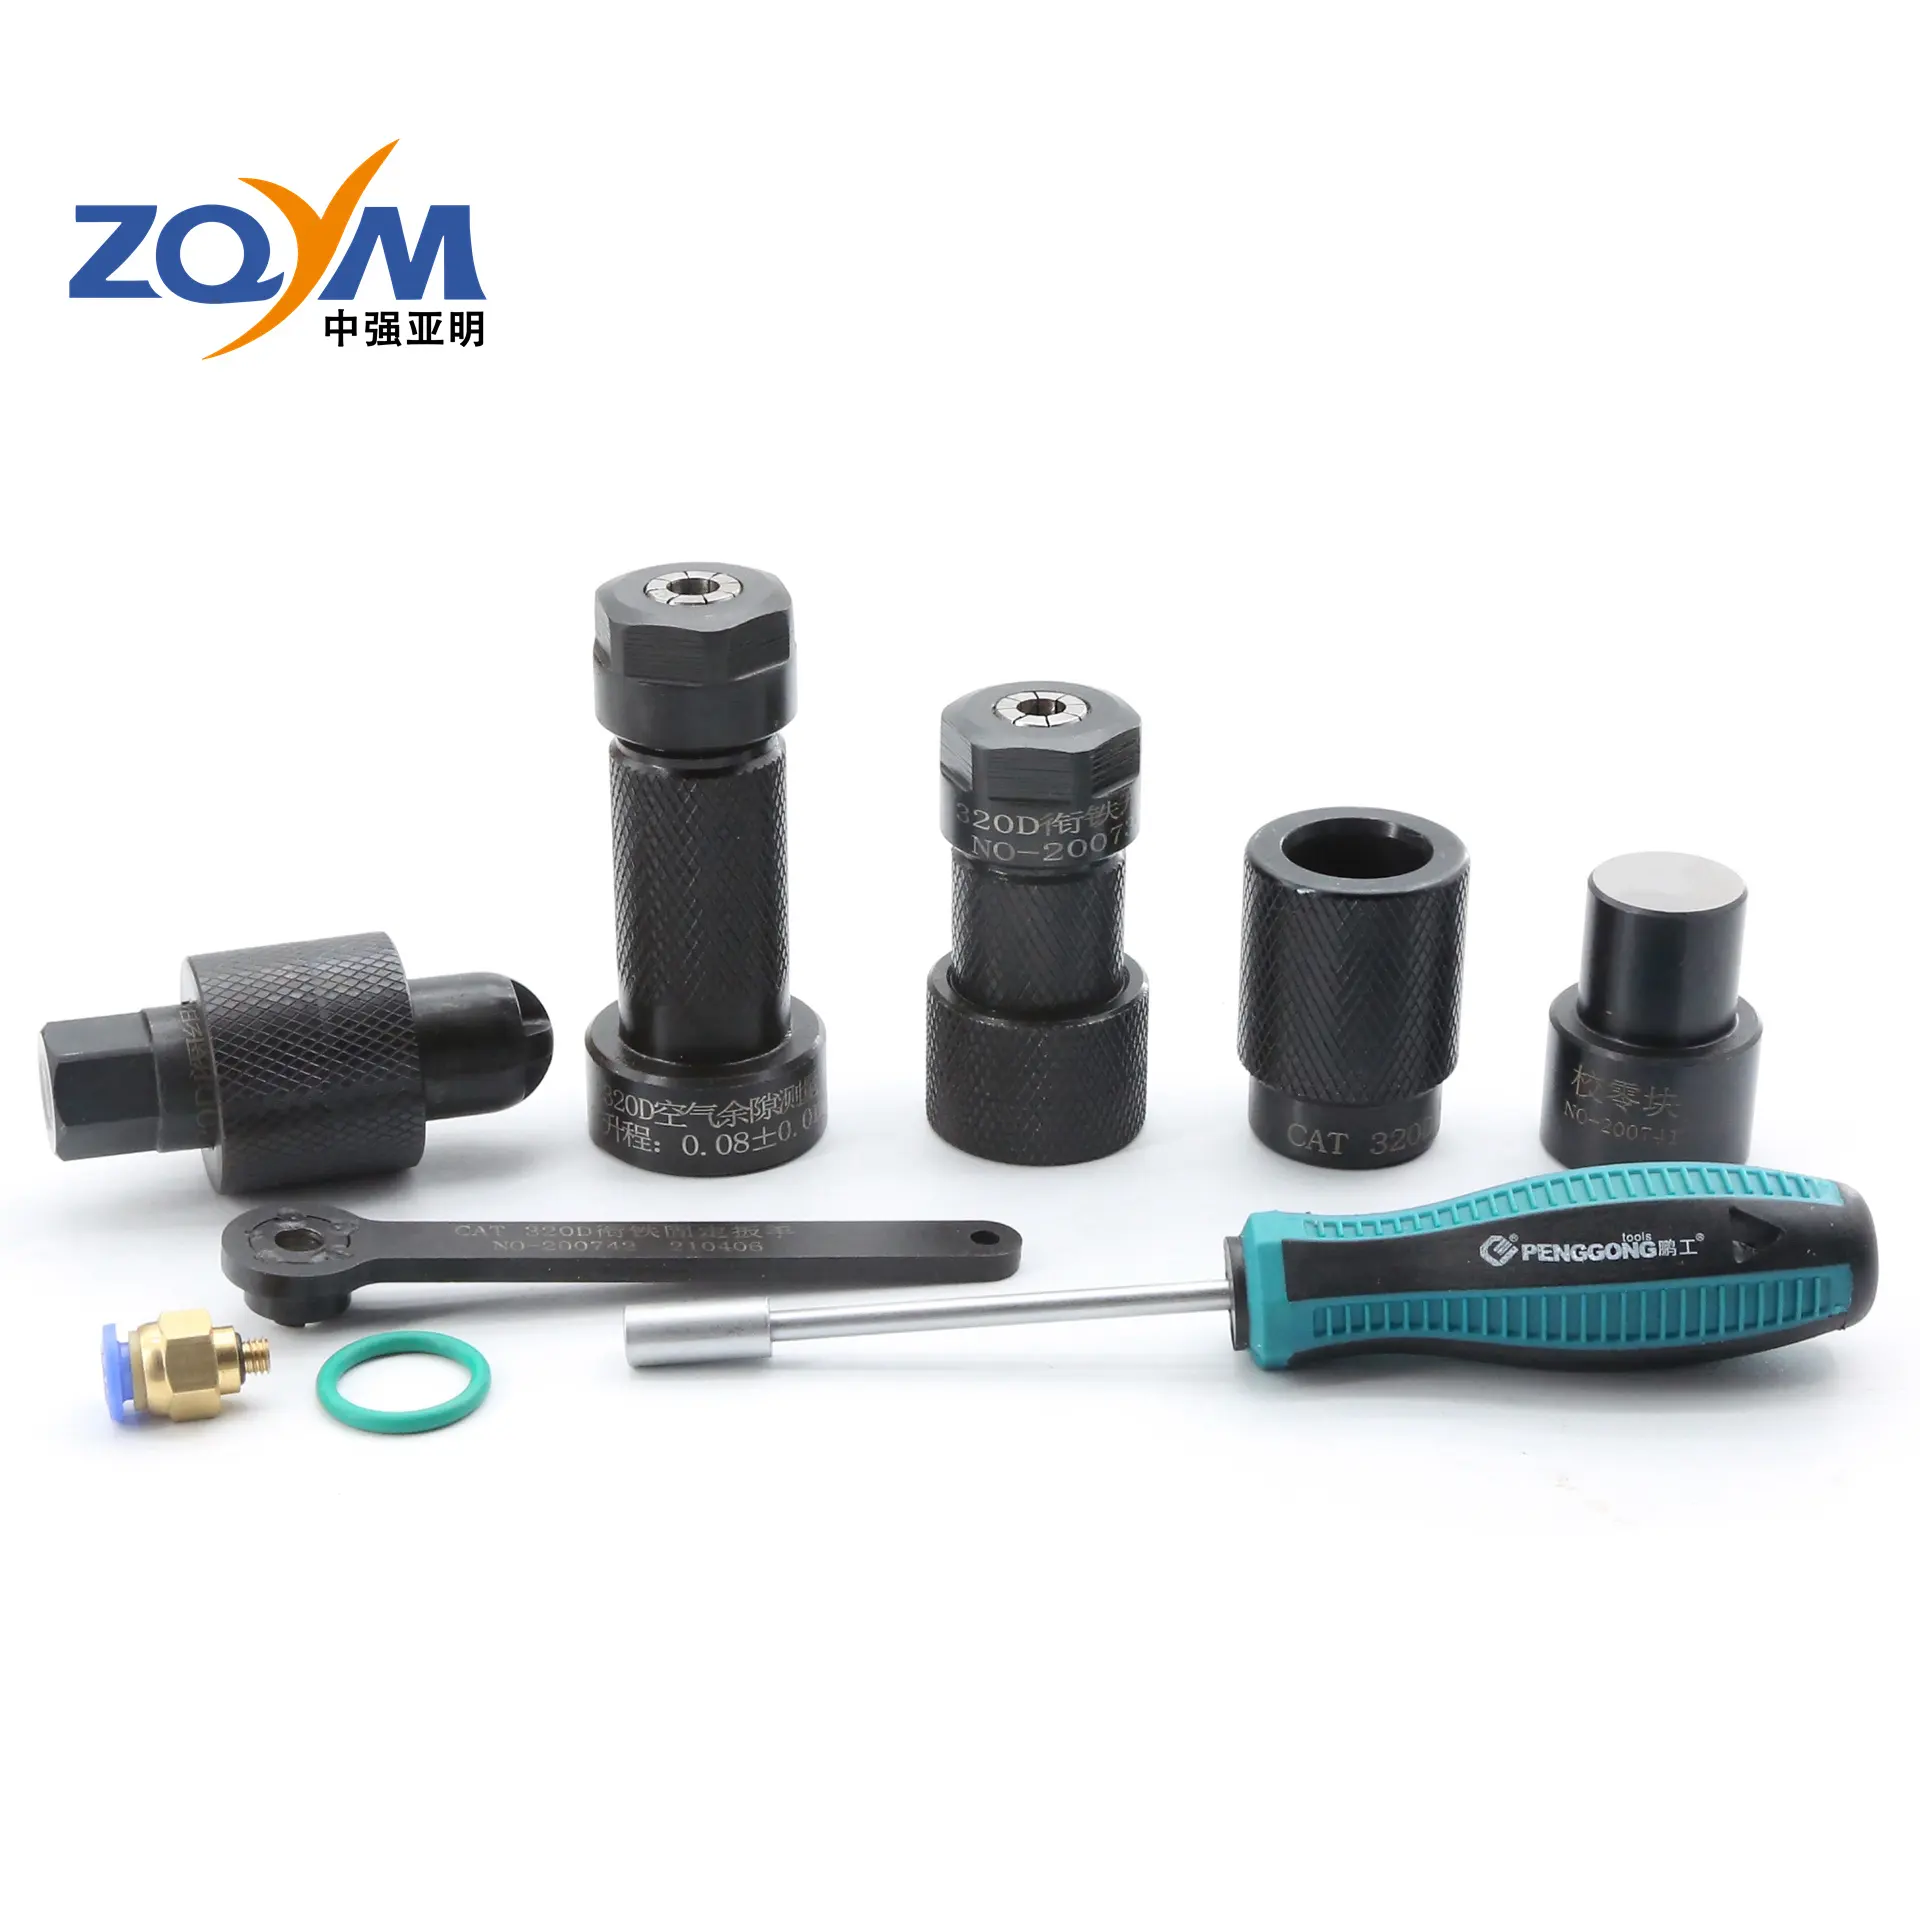 La herramienta de medición de desmontaje del inyector de combustible del sistema de resonancia ZQYM es adecuada para el inyector de combustible Cat 320D